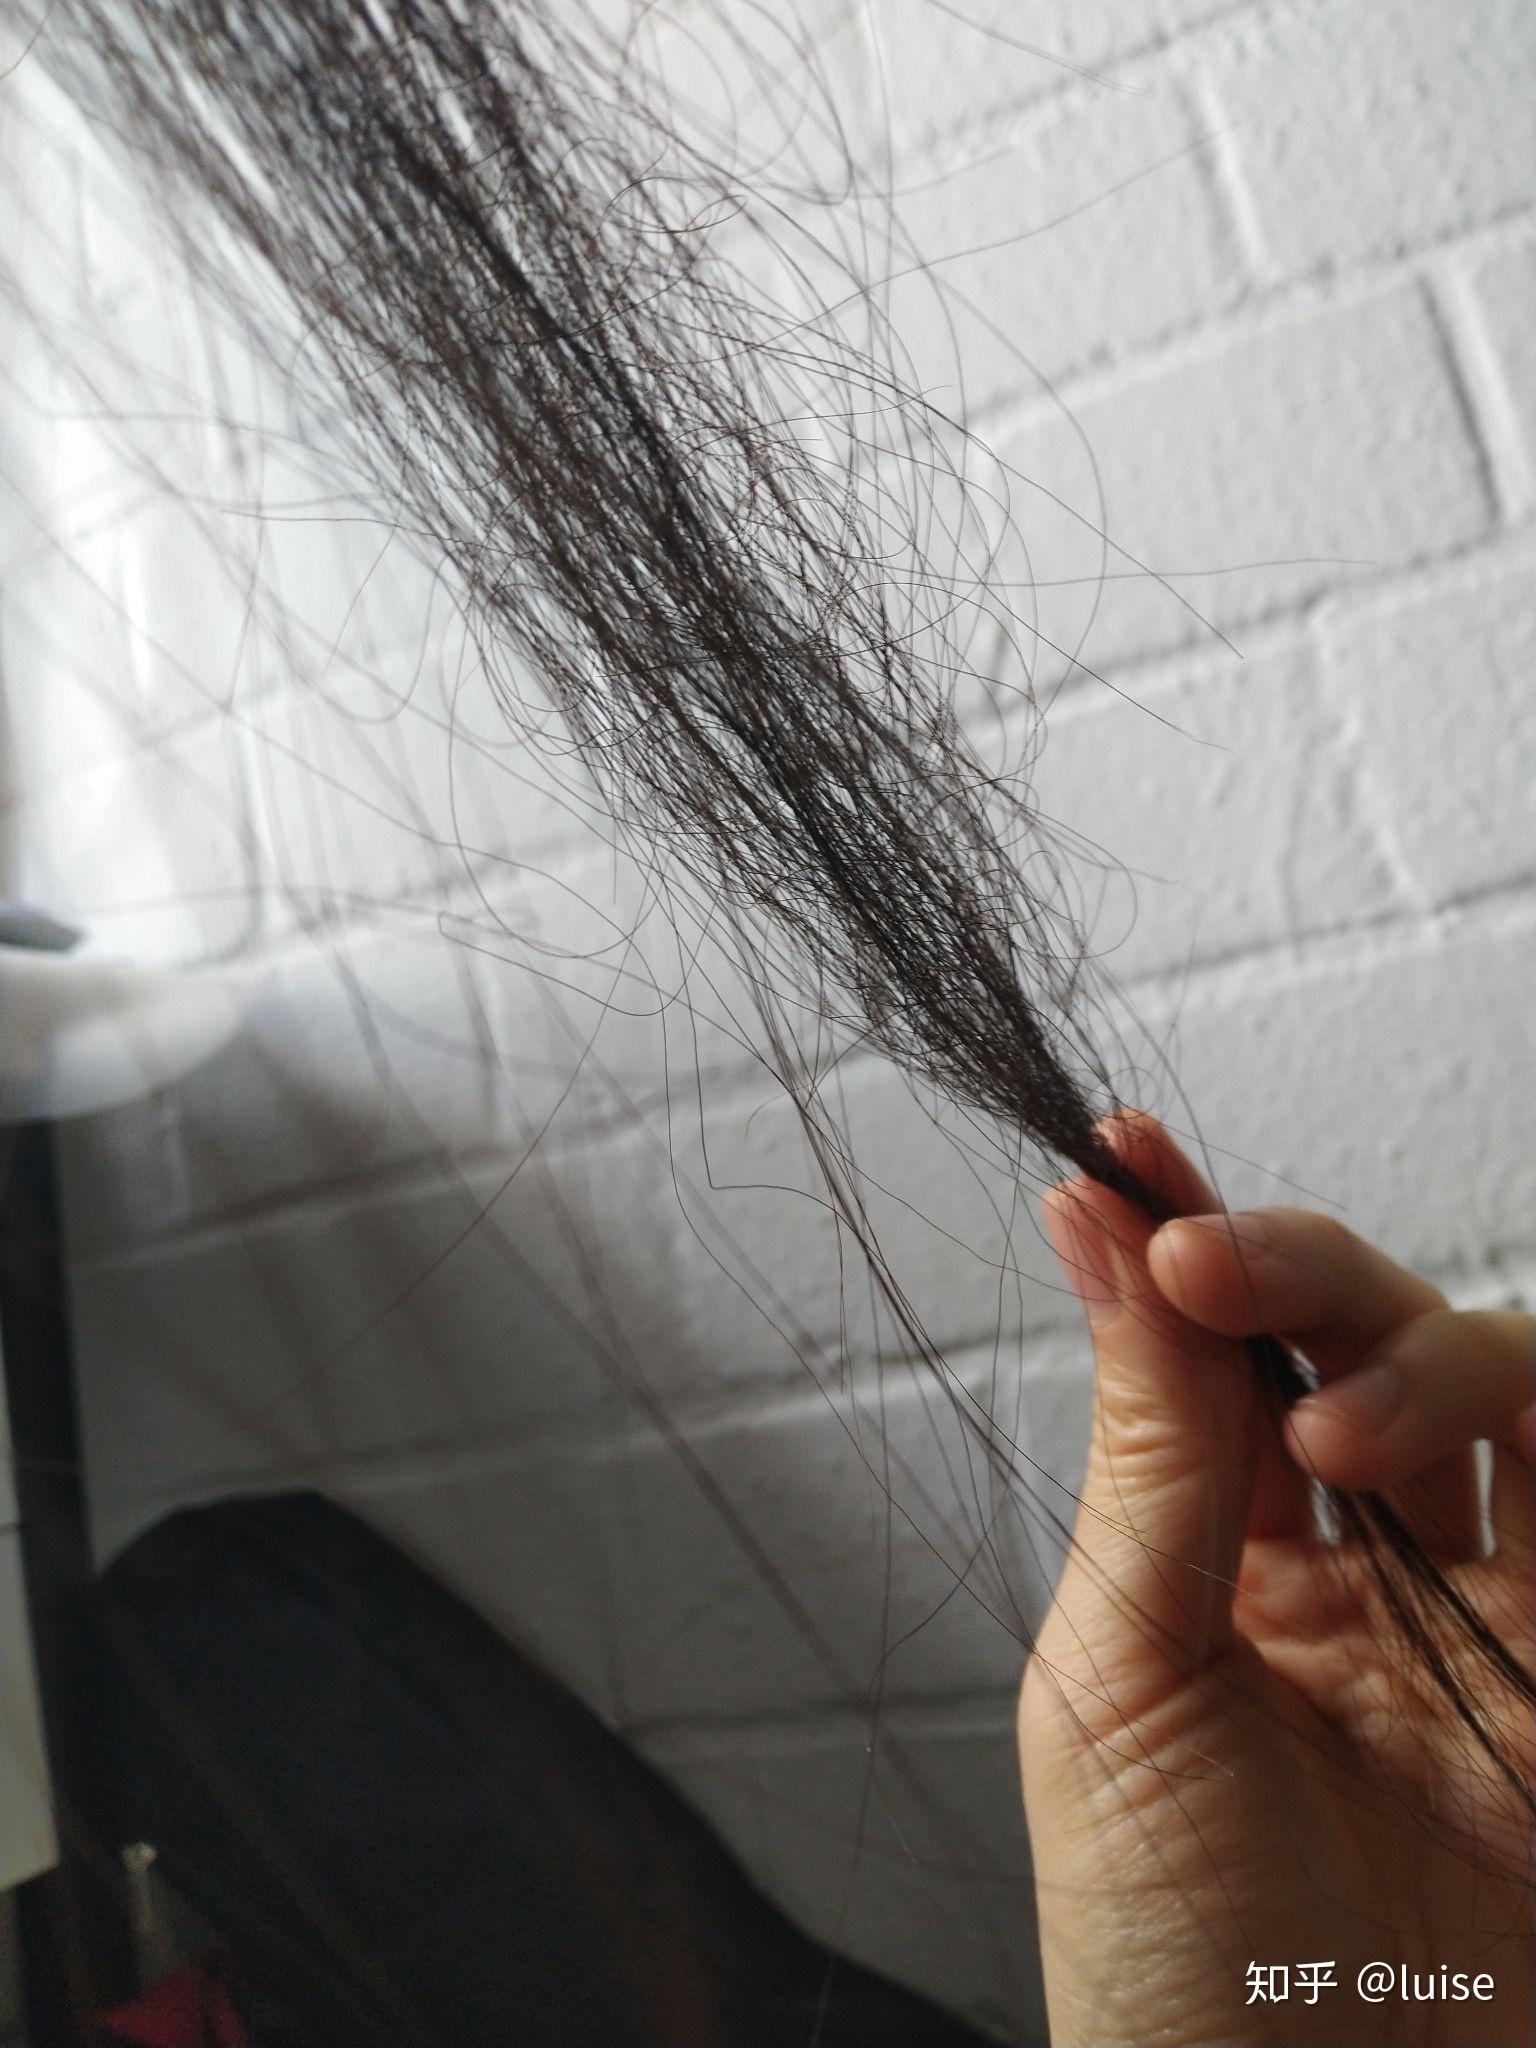 为什么我会有部分头发的发尾像钢丝一样弯曲是什么原因造成的?